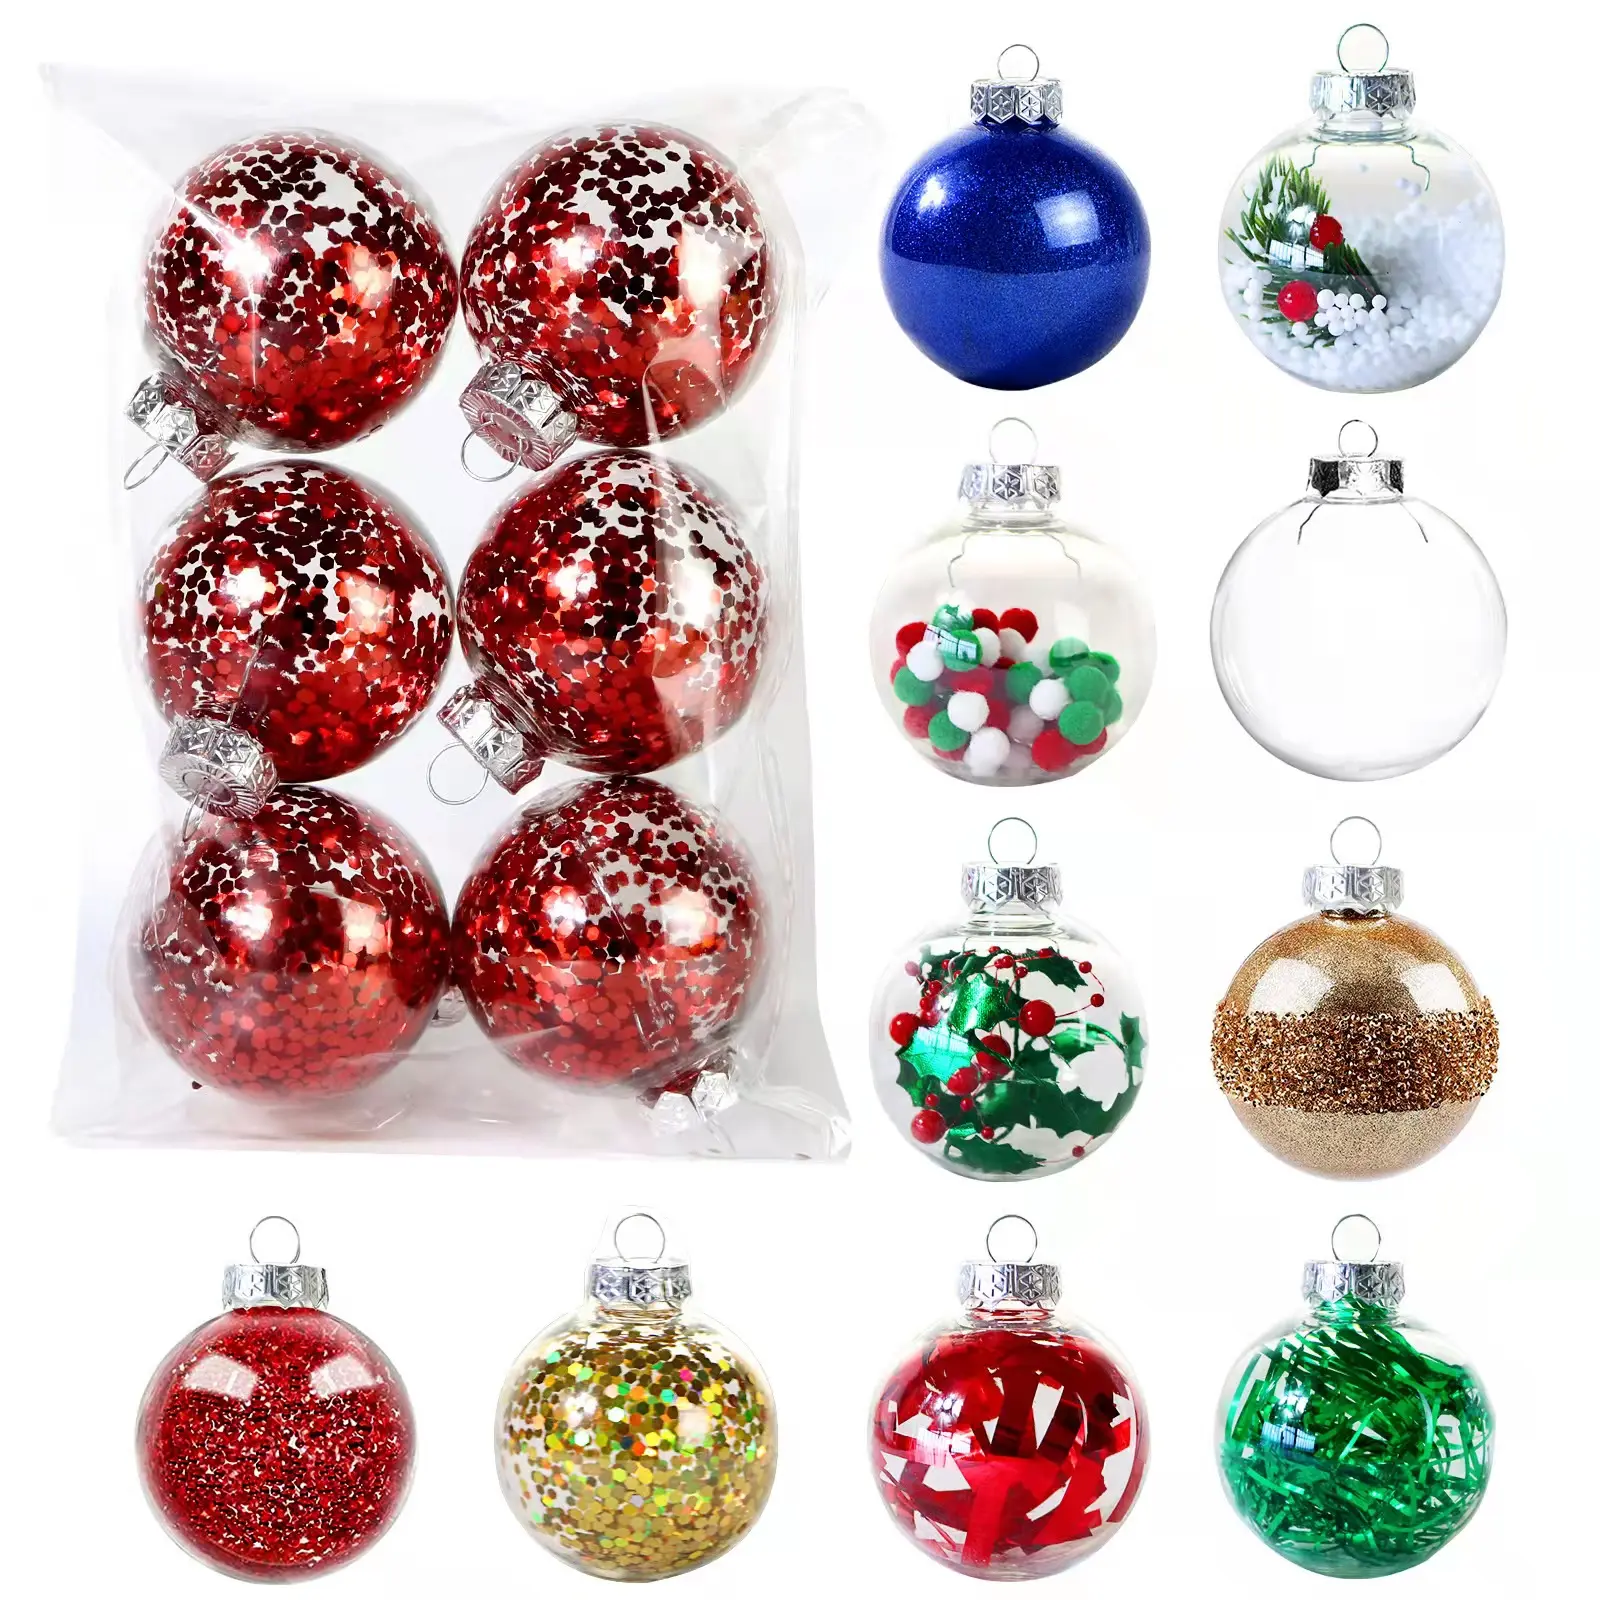 Weihnachten transparente Kugel 6 teile/beutel Weihnachts bäume öffnen Ball Box Bauble Ornament Hochzeits geschenk Geschenk Party Home Decoration